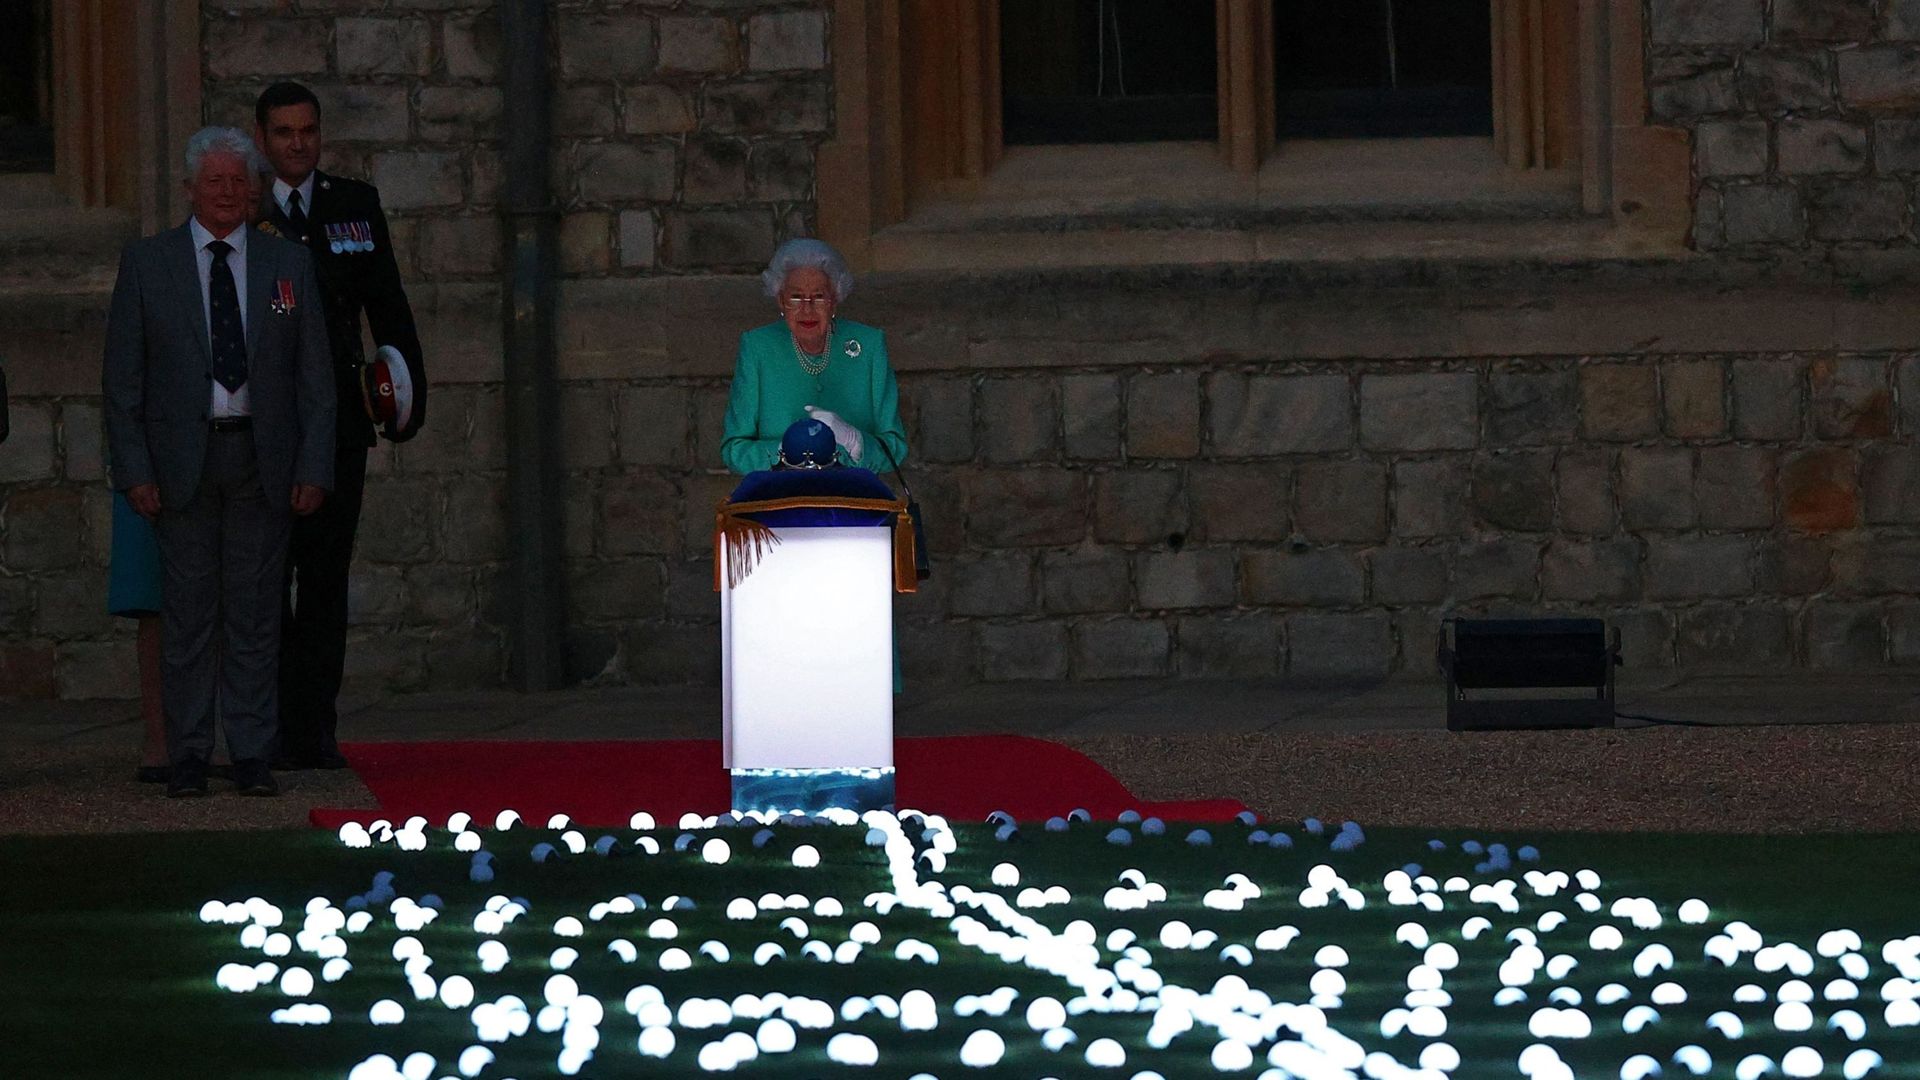 La reine Elizabeth II touche le globe des nations du Commonwealth pour lancer l'allumage du "Tree of Trees" au palais de Buckingham à Londres, depuis le château de Windsor, à l'ouest de Londres, le 2 juin 2022, dans le cadre des célébrations du jubilé de 